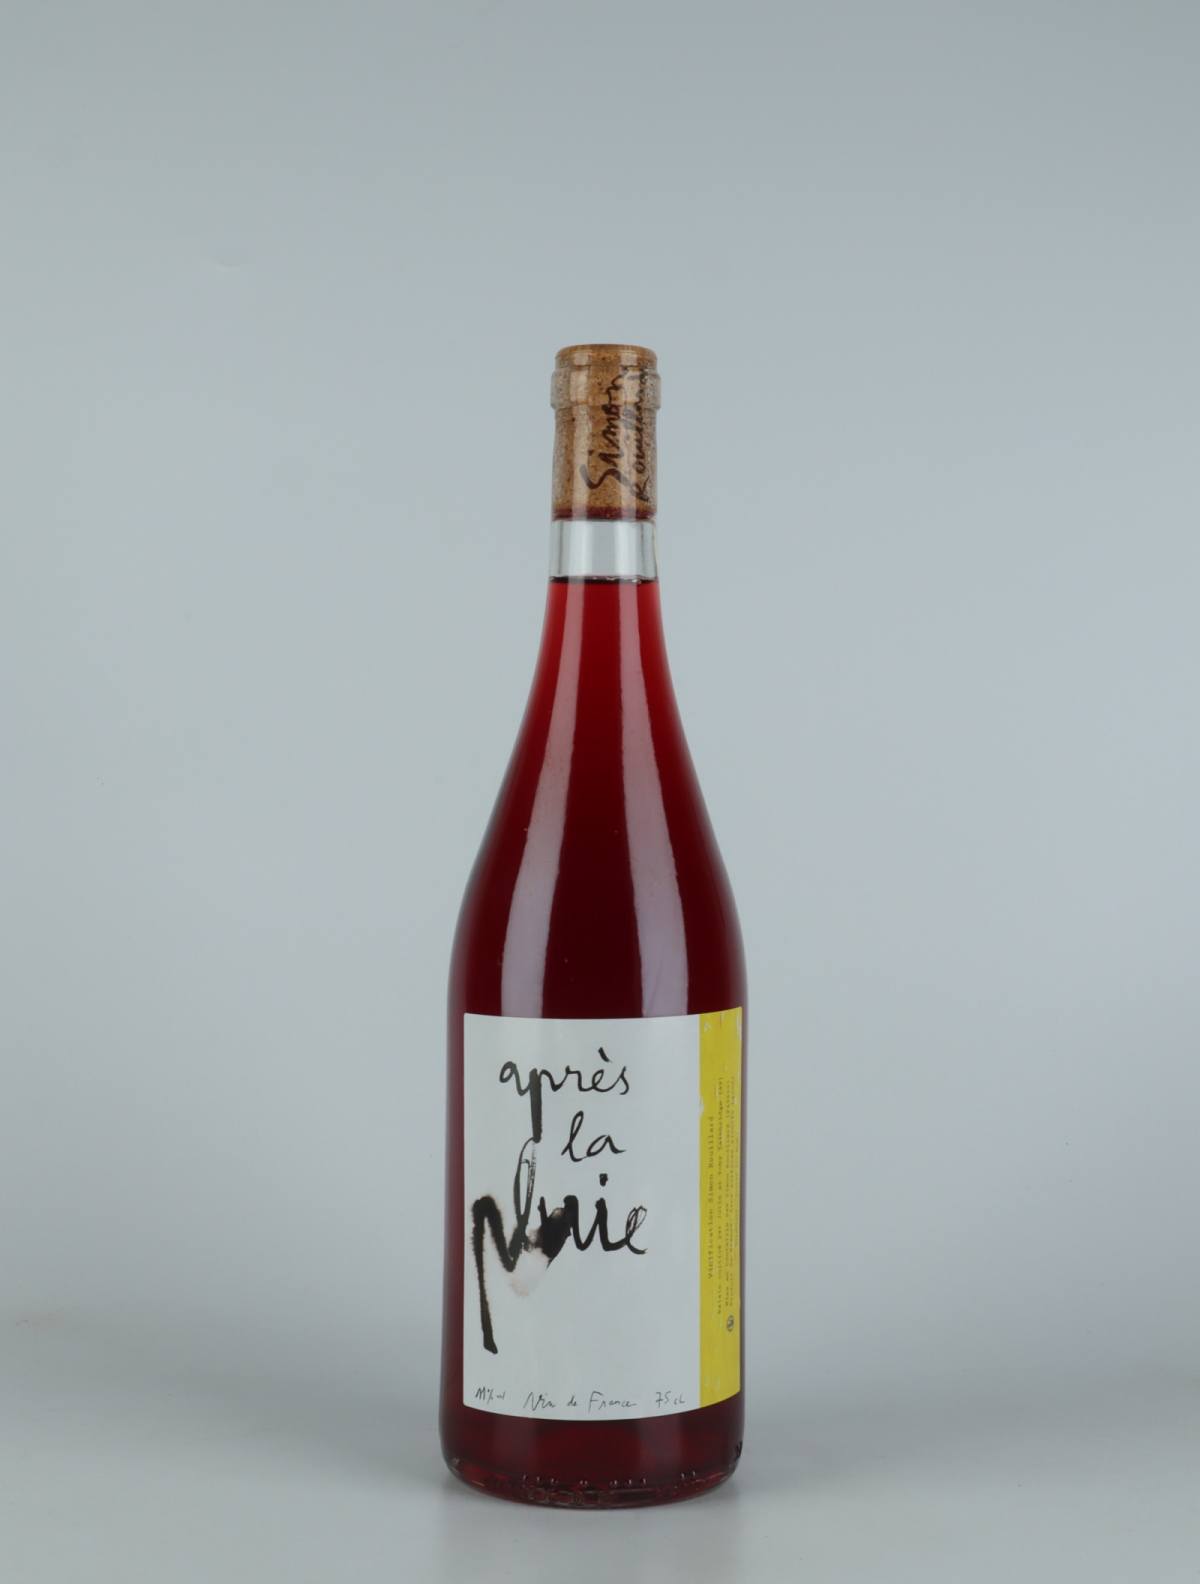 A bottle 2021 Après la pluie Red wine from Simon Rouillard, Loire in France